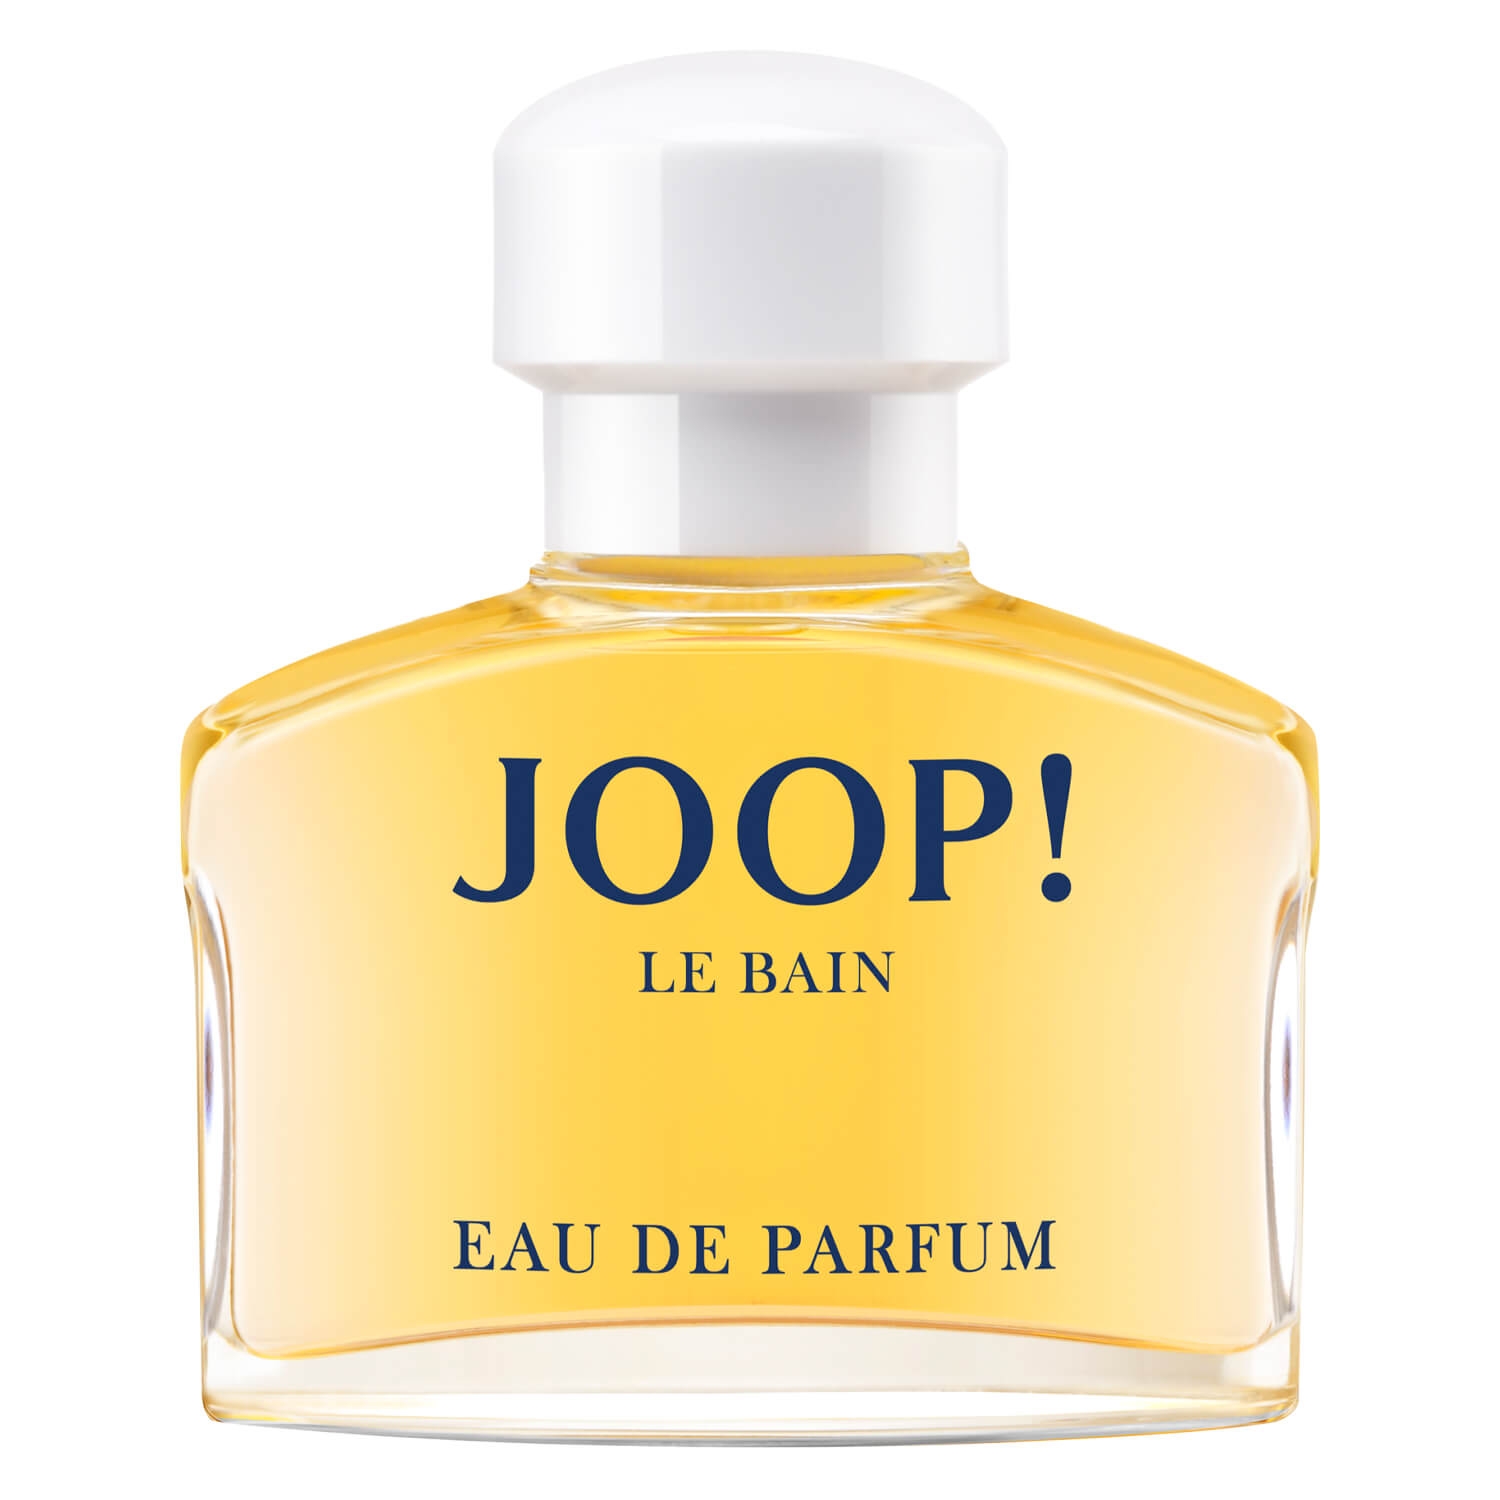 Product image from Joop! Le Bain - Eau de Parfum